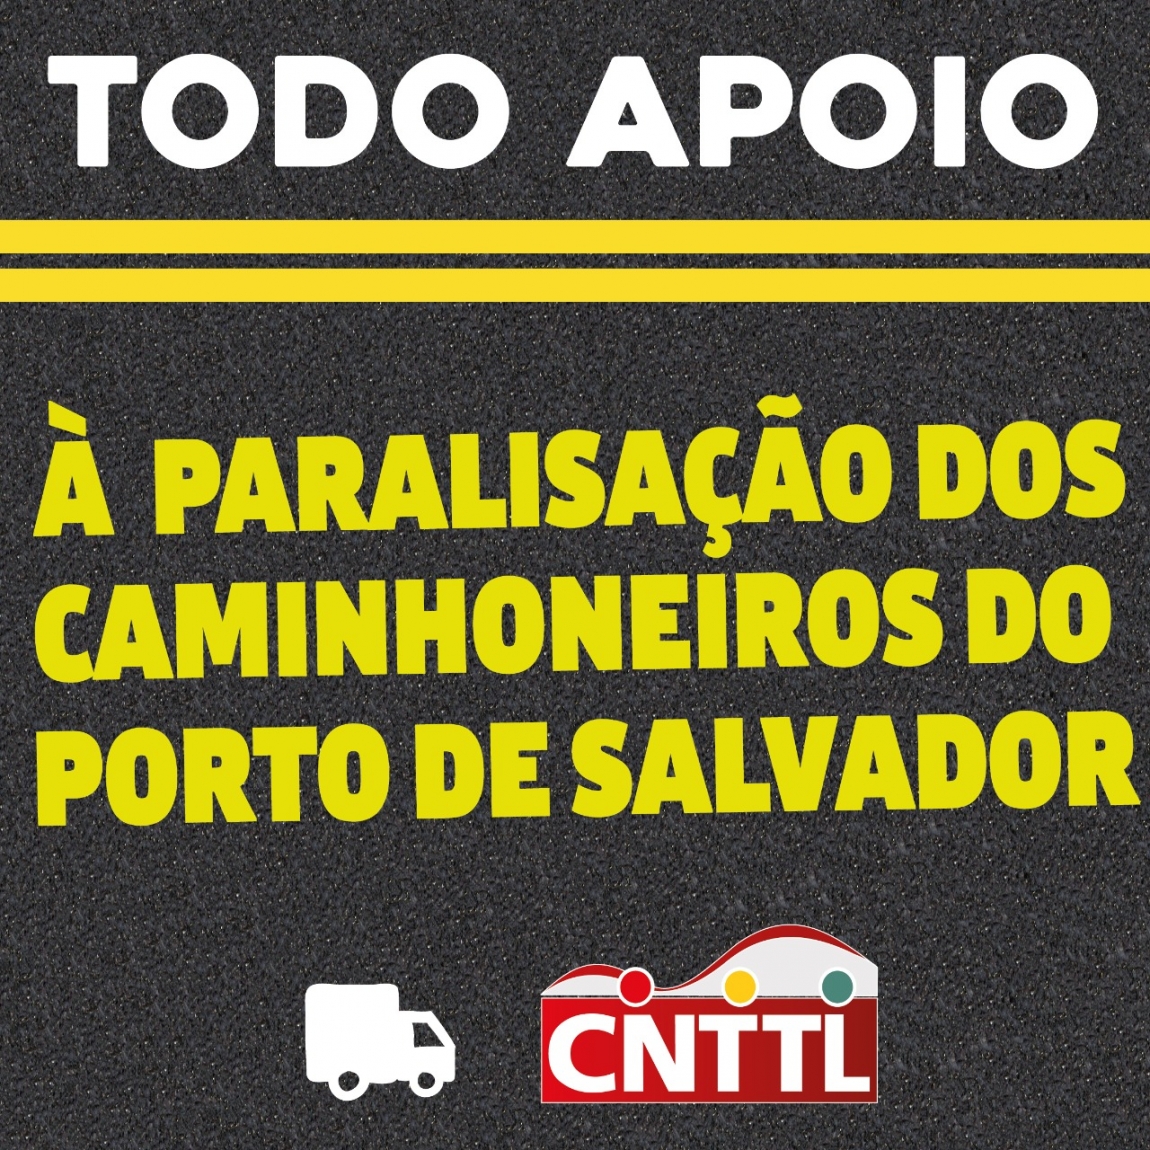 Imagem de CNTTL apoia paralisação dos caminhoneiros autônomos do Porto de Salvador